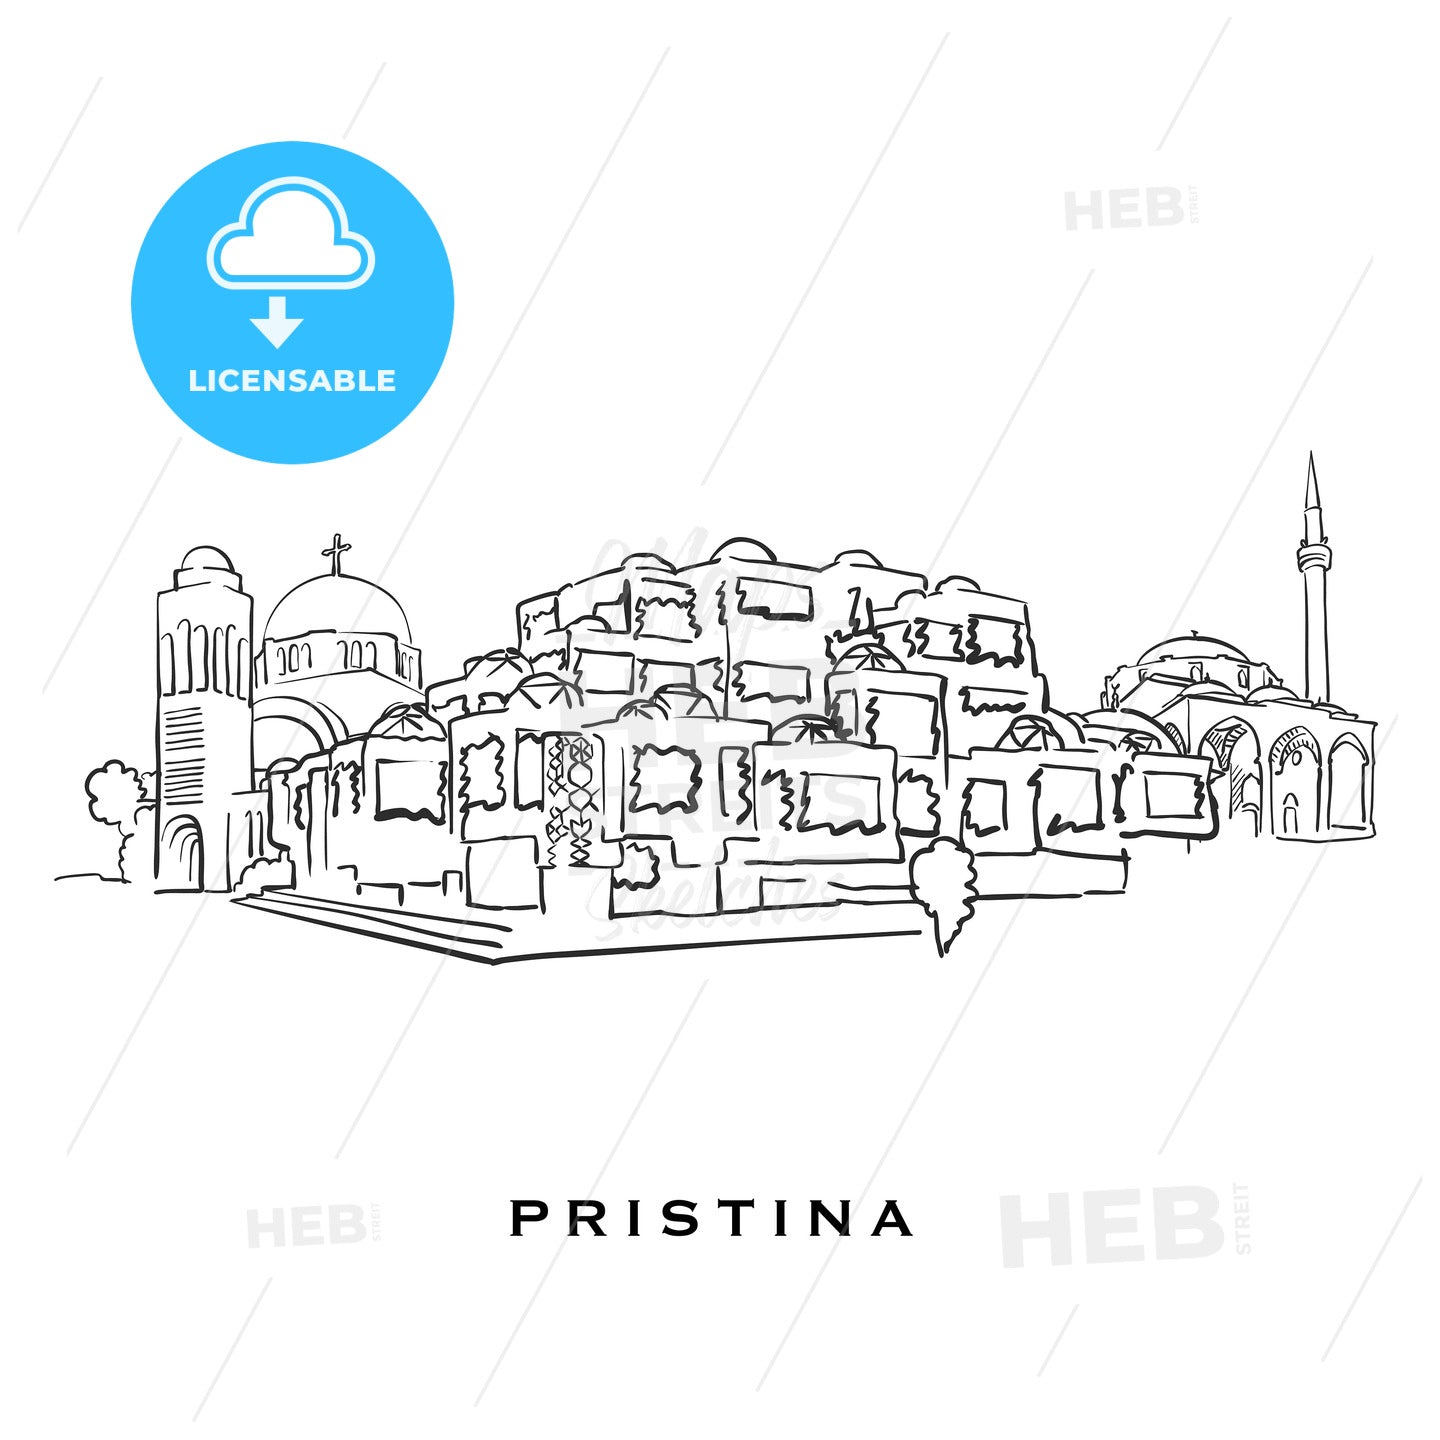 Pristina Kosovo famous architecture – instant download